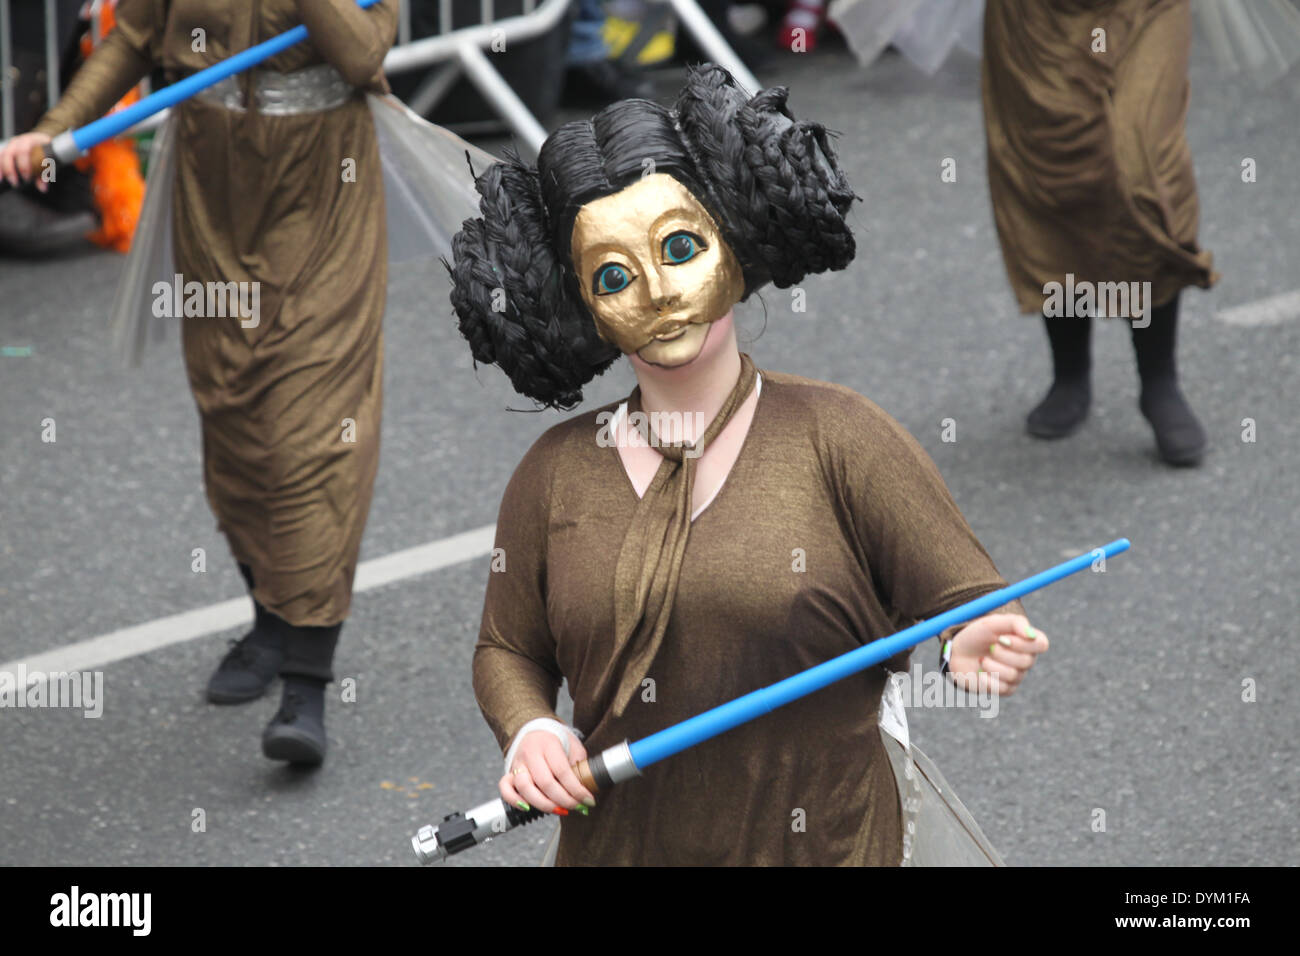 Eine Frau, gekleidet wie eine Figur aus der Star Wars-Film-Serie auf der  St. Patricks Day Parade in Dublin Stadtzentrum Stockfotografie - Alamy